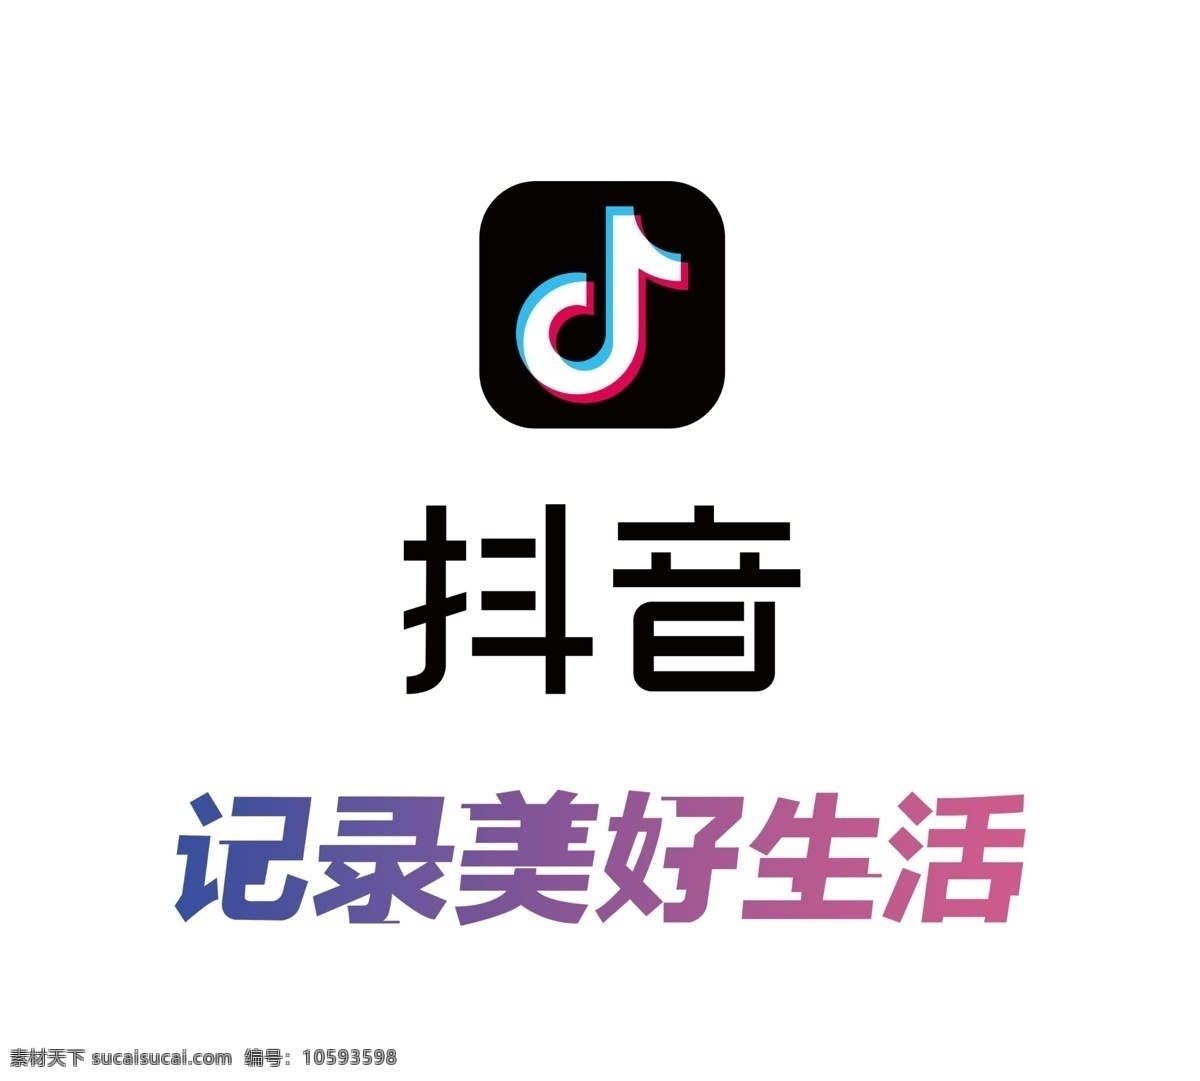 抖音 logo 微信 爱奇艺 快手 火山小视频 今日头条